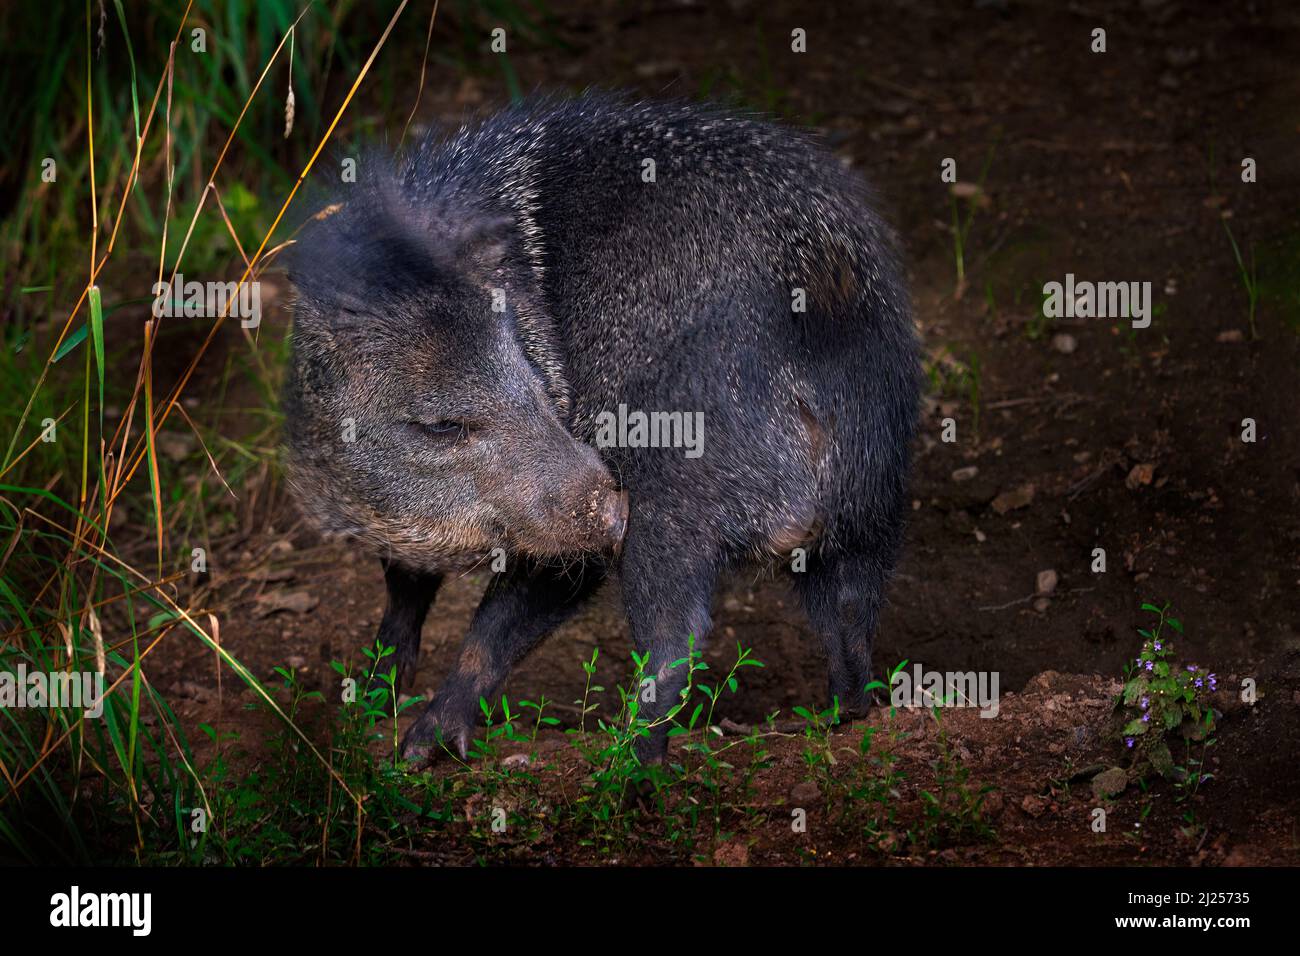 Halsbandpeccary, Pecari tajacu, wildes Tier im natürlichen Lebensraum. Peccary Schwein im Wald Lebensraum, Pantanal in Brasilien. Paccary in wilder Natur, wil Stockfoto